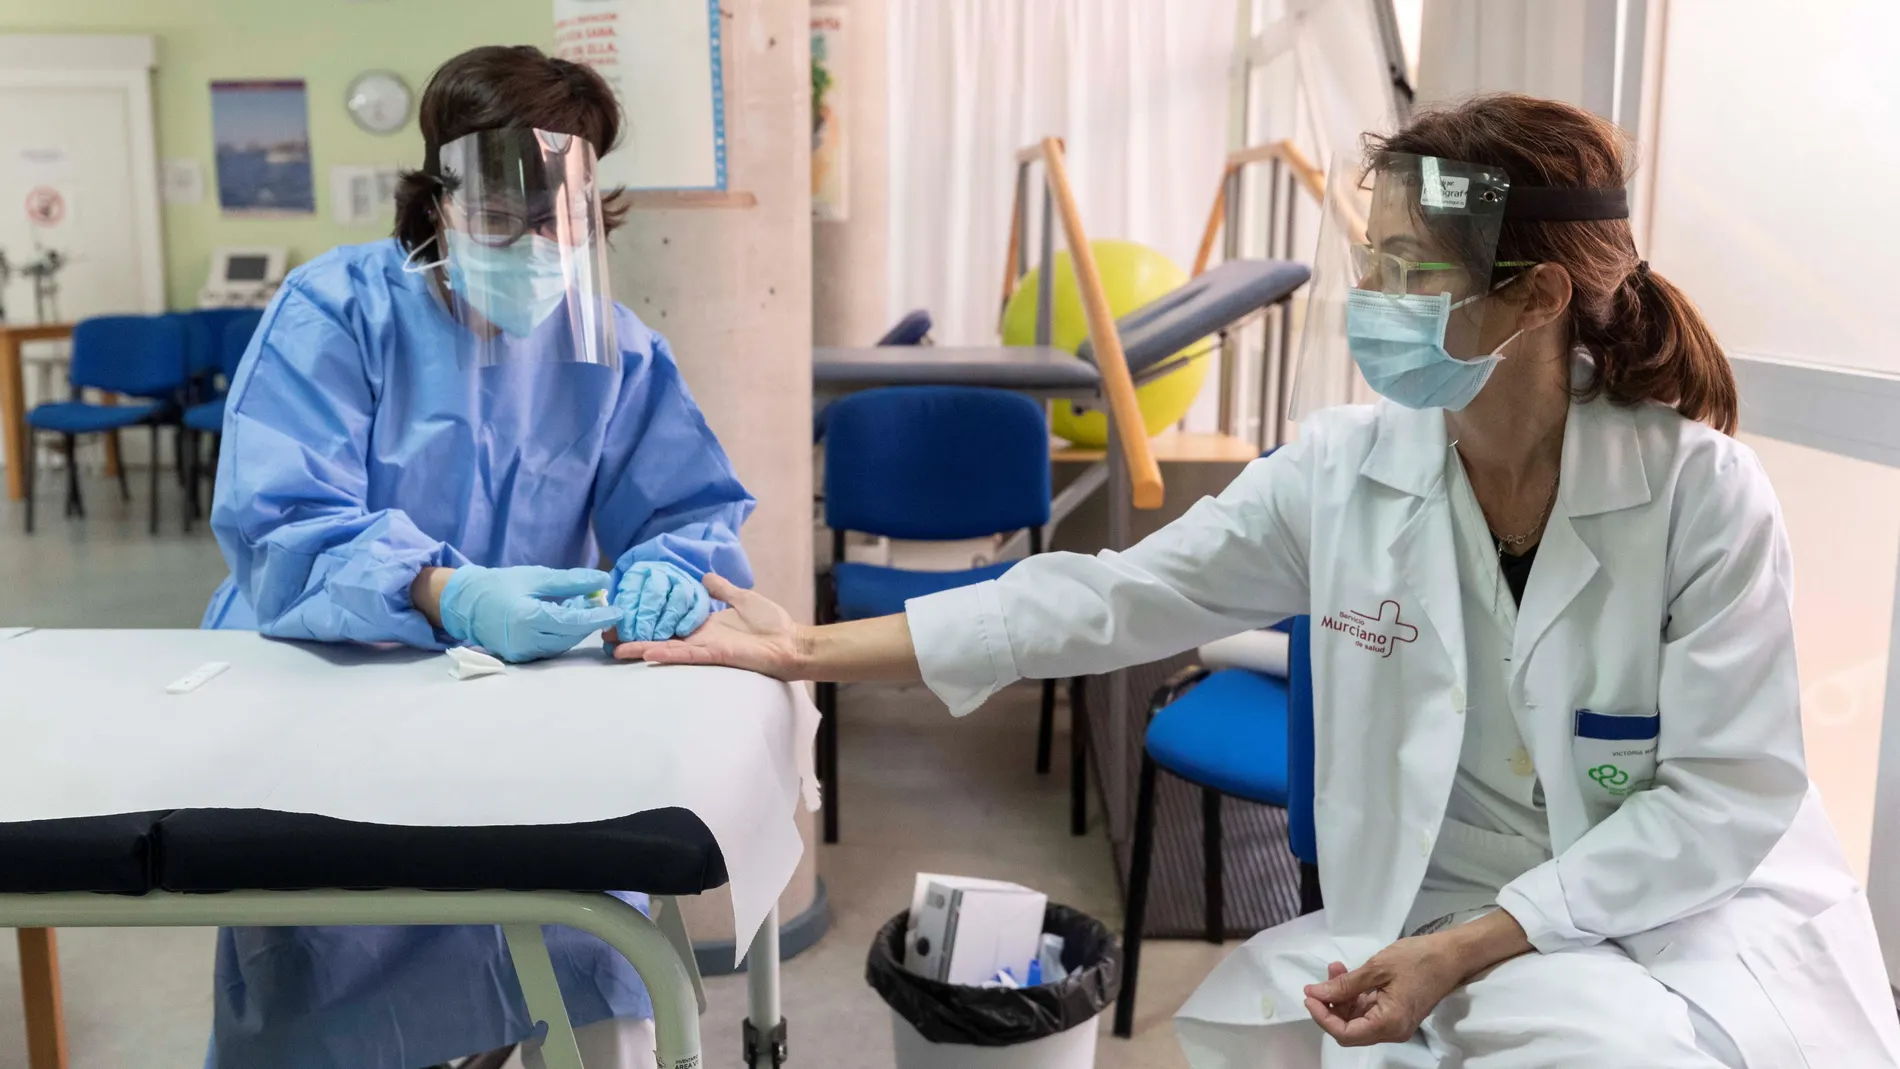 Una enfermera toma muestras de sangre a una compañera para realizarle un test rápido de coronavirus, hoy en el centro de salud del Carmen, Murcia